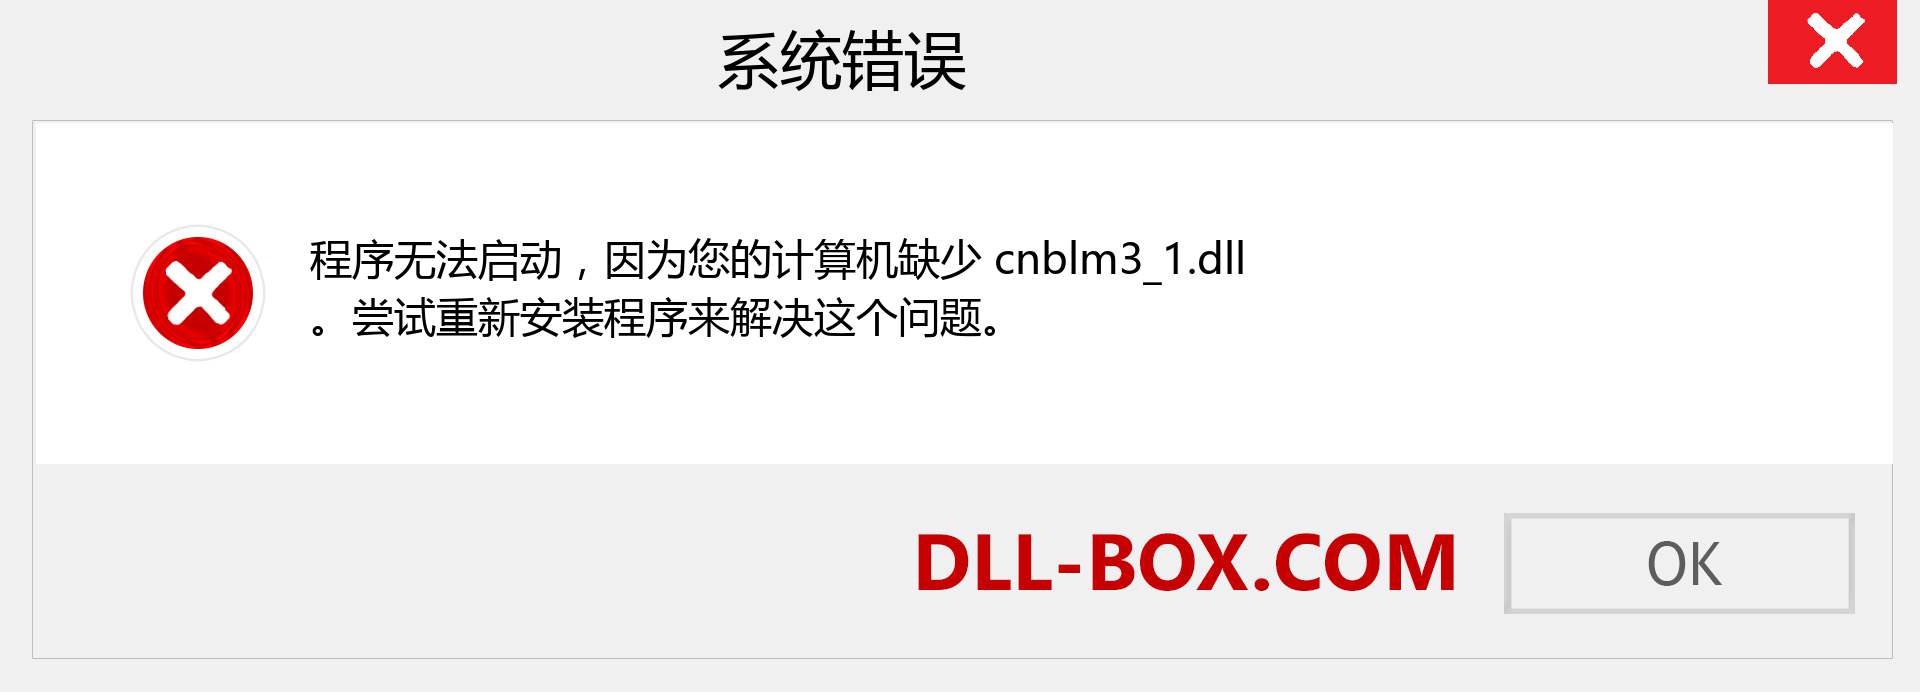 cnblm3_1.dll 文件丢失？。 适用于 Windows 7、8、10 的下载 - 修复 Windows、照片、图像上的 cnblm3_1 dll 丢失错误